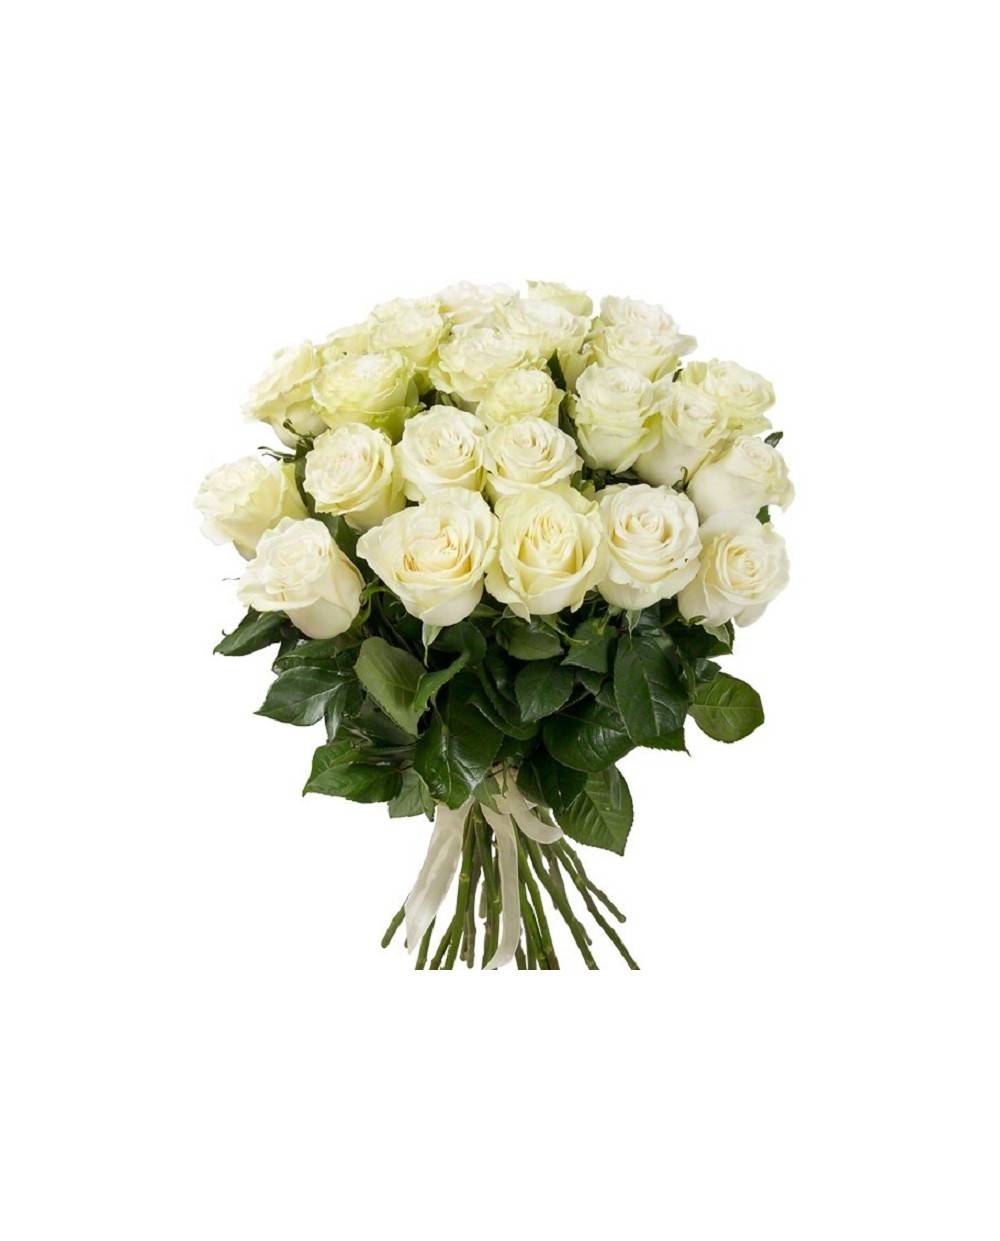 О белых розах: самые красивые и большие, белоснежные и шикарные сортовые цветы